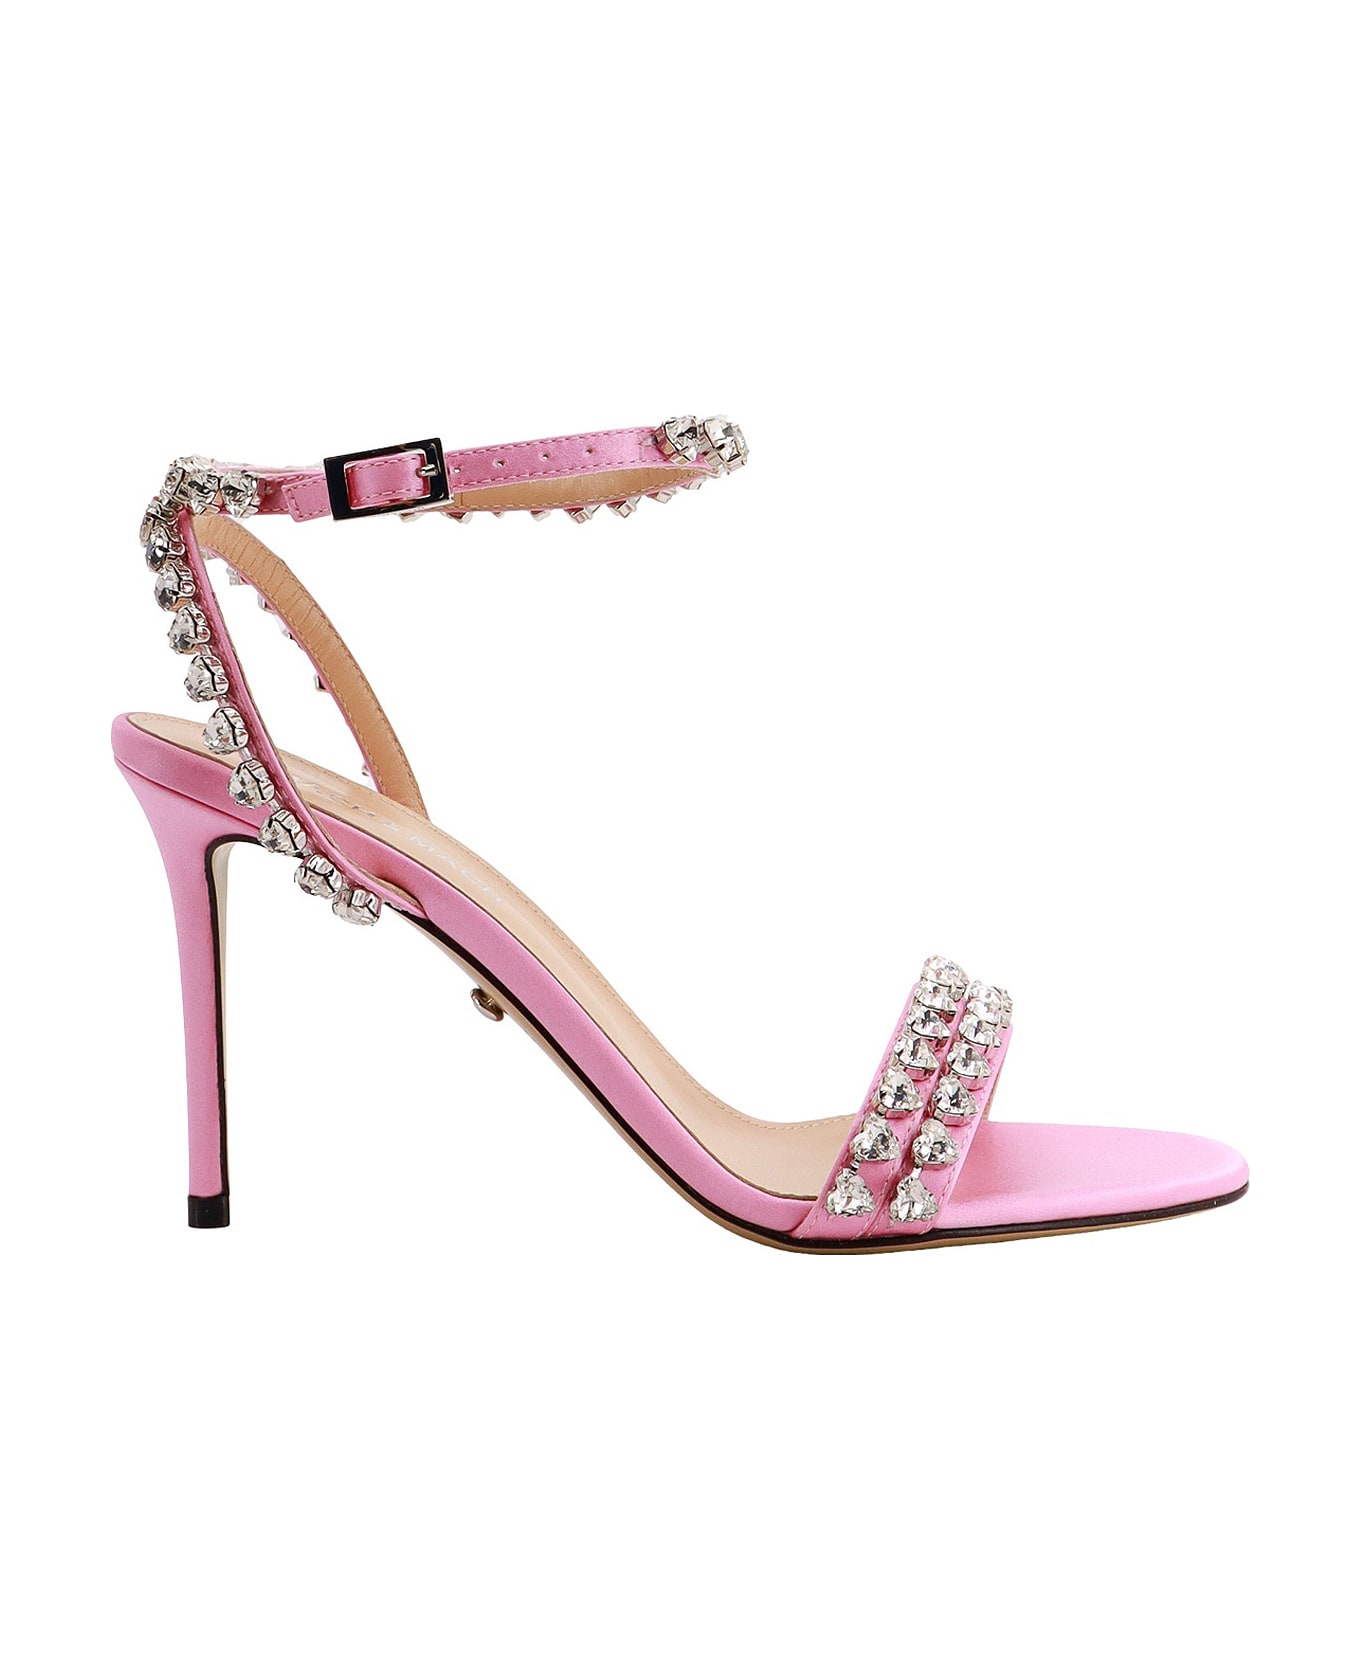 Mach & Mach Sandals - Pink